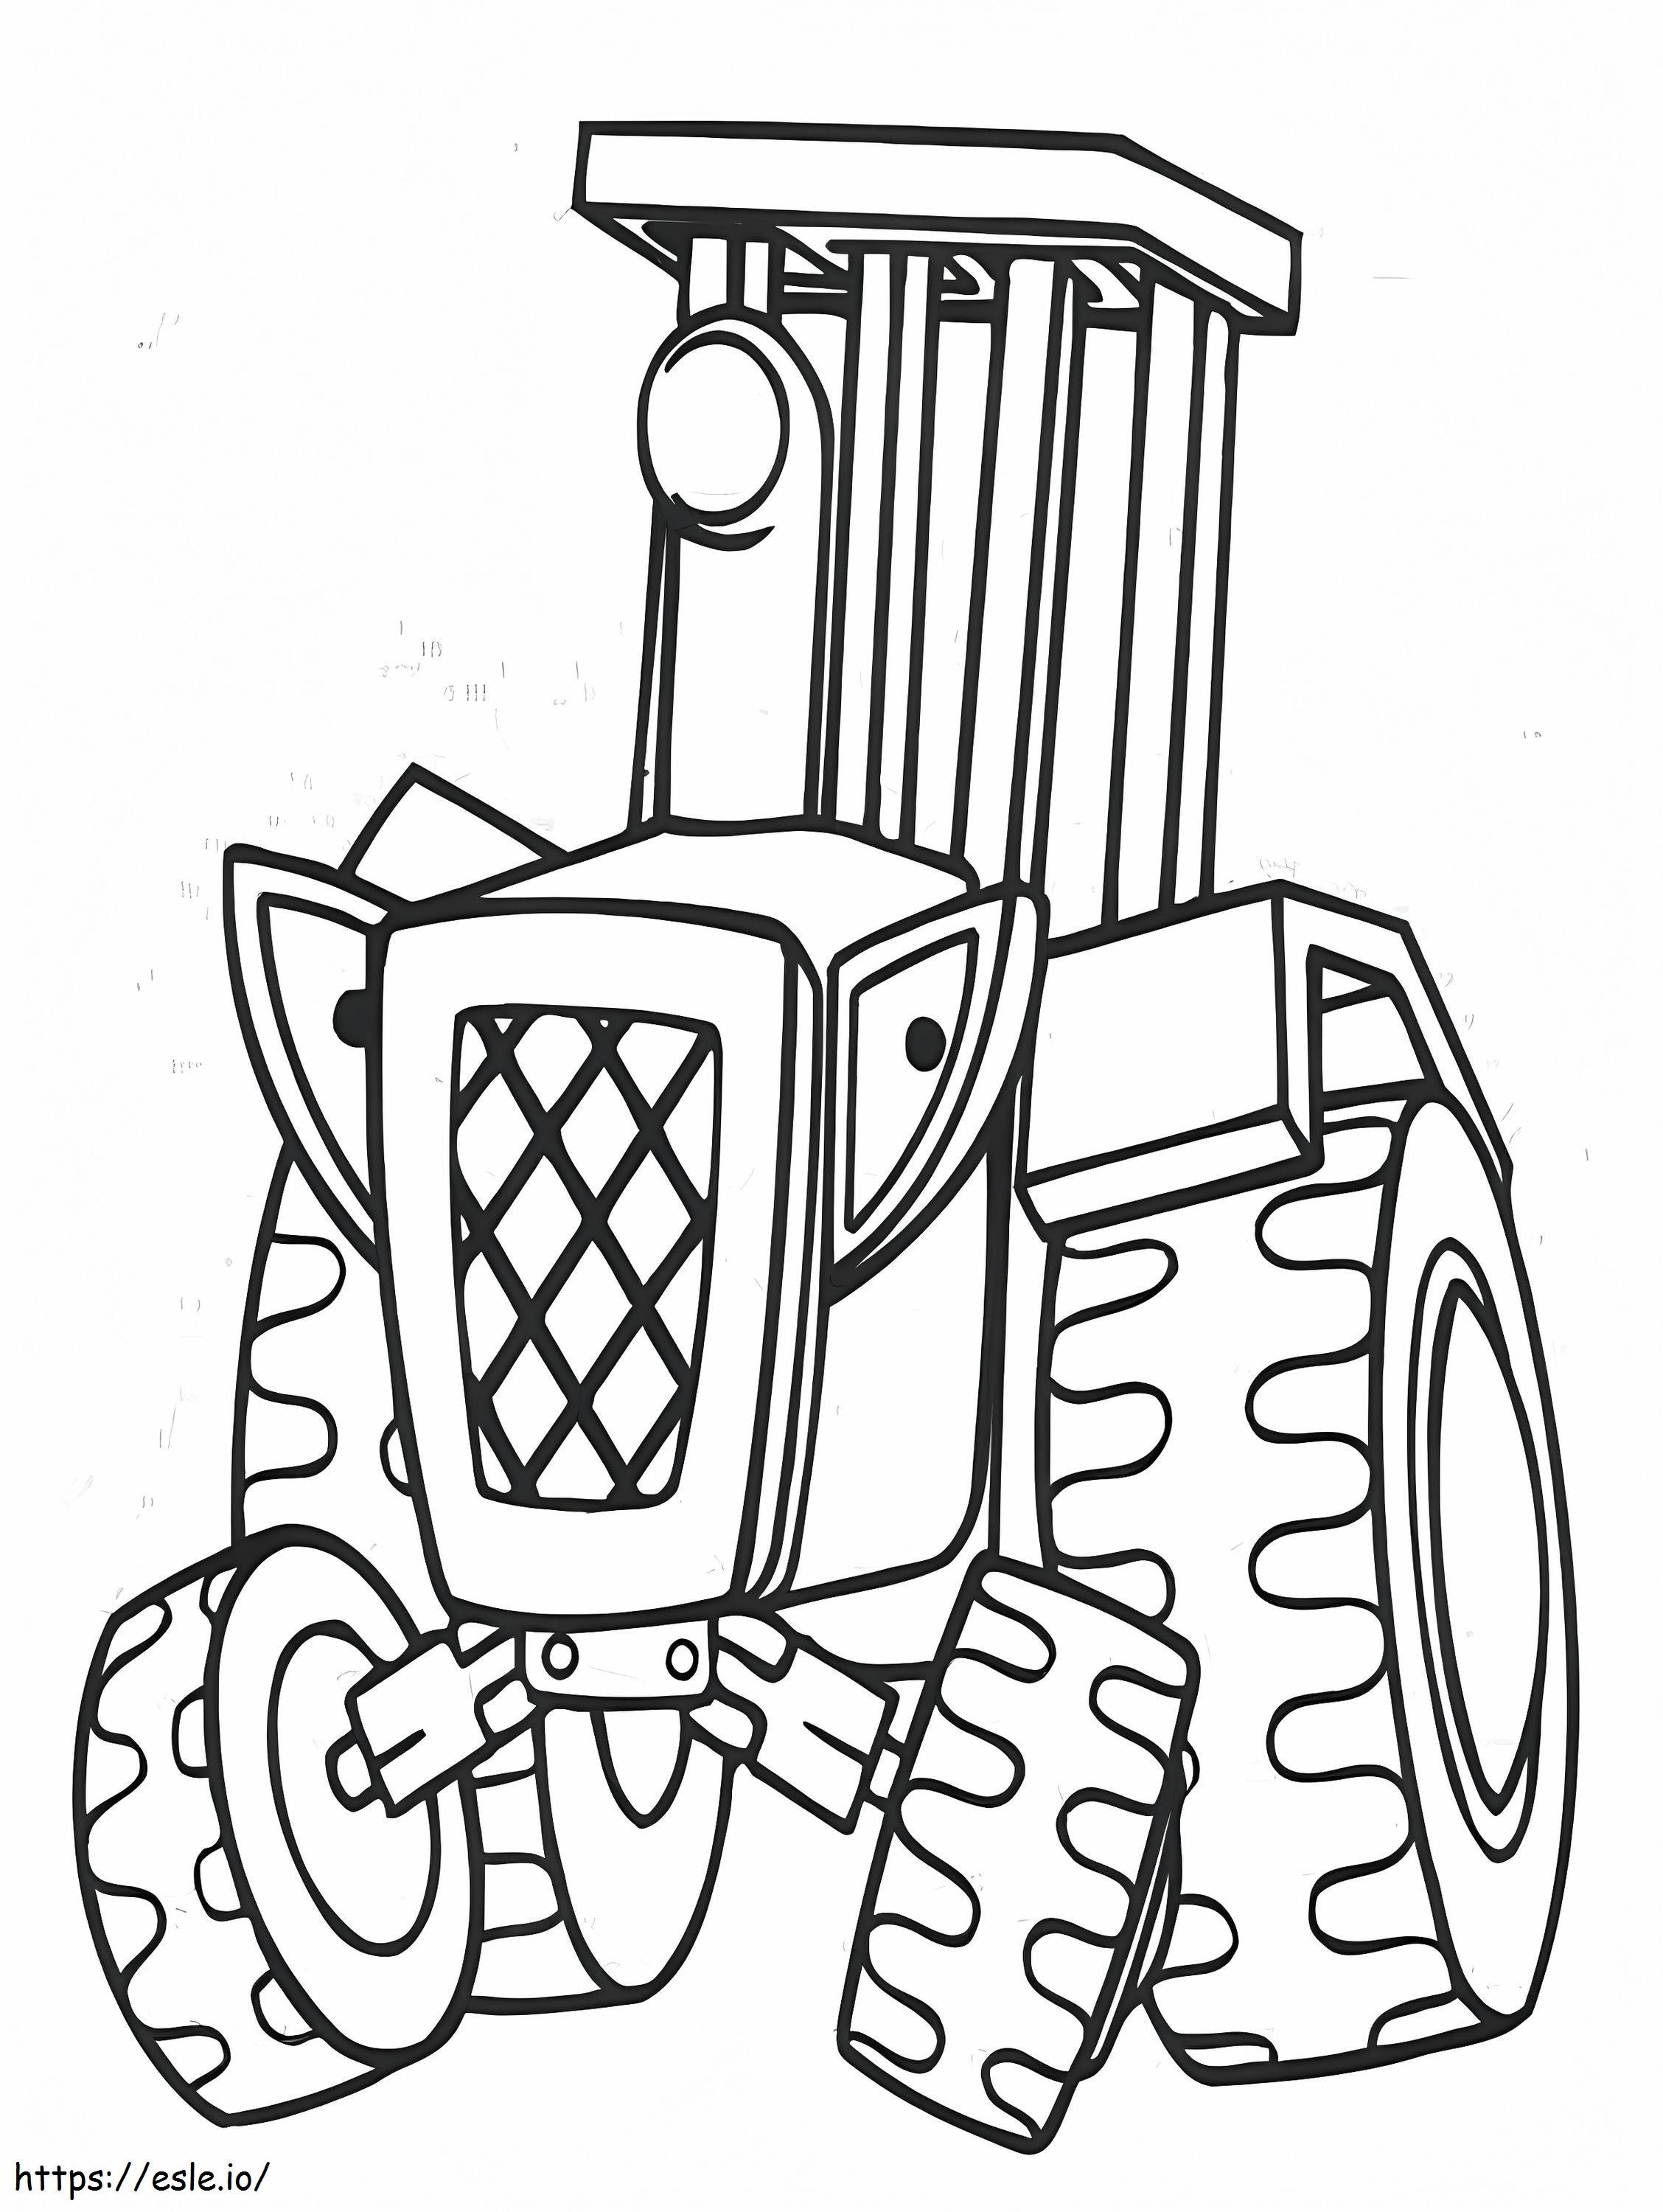 Cartoon Tractor coloring page